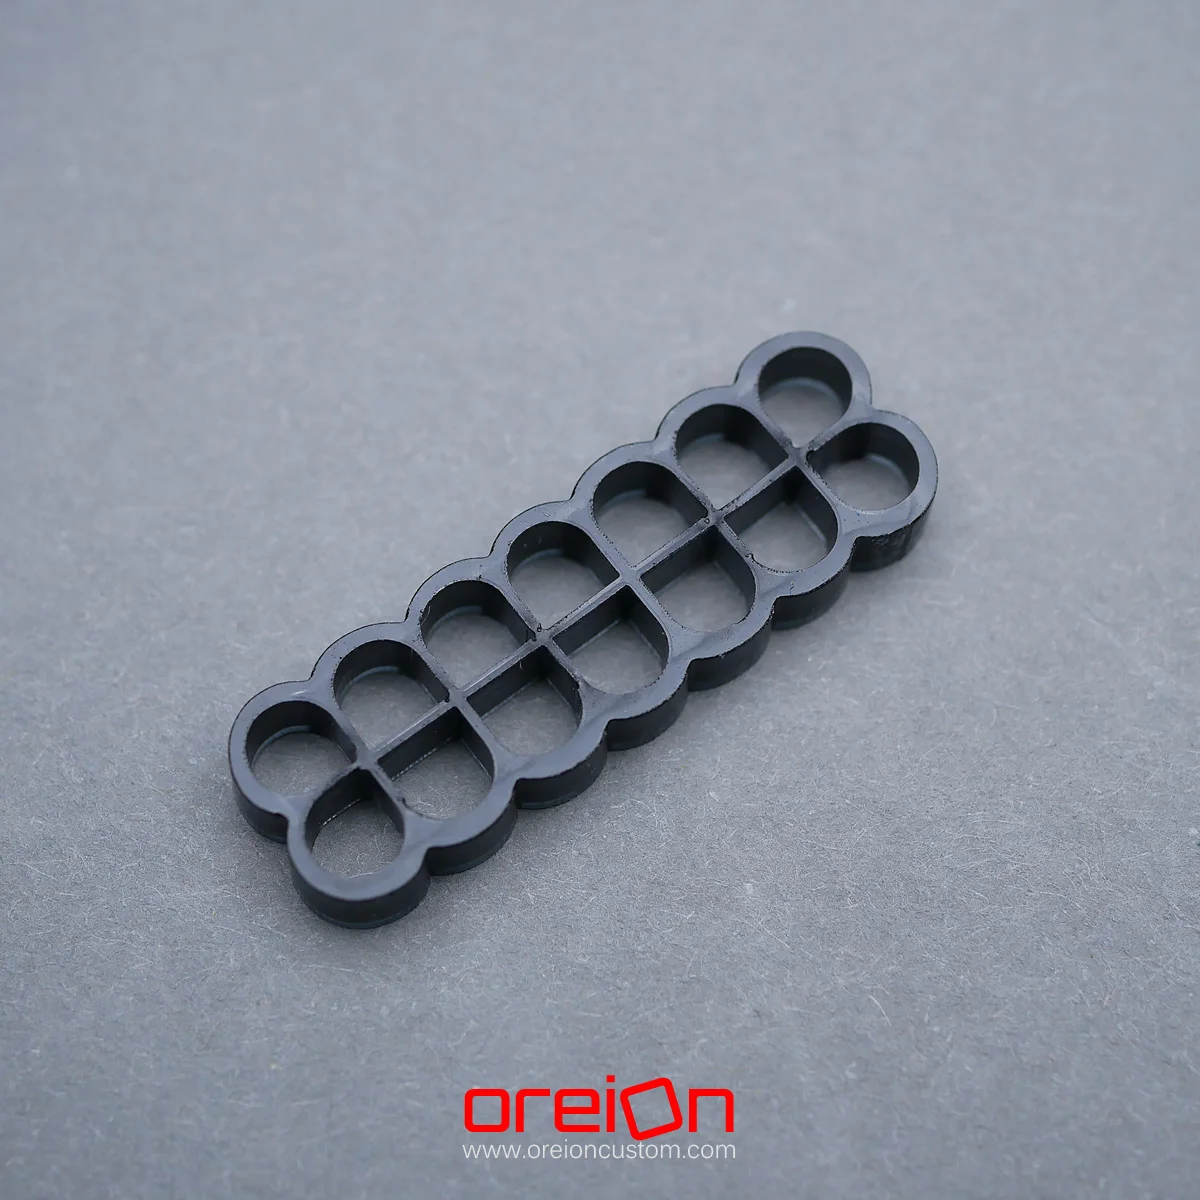 oreioncustom Cable Comb – black Closed 14 pin